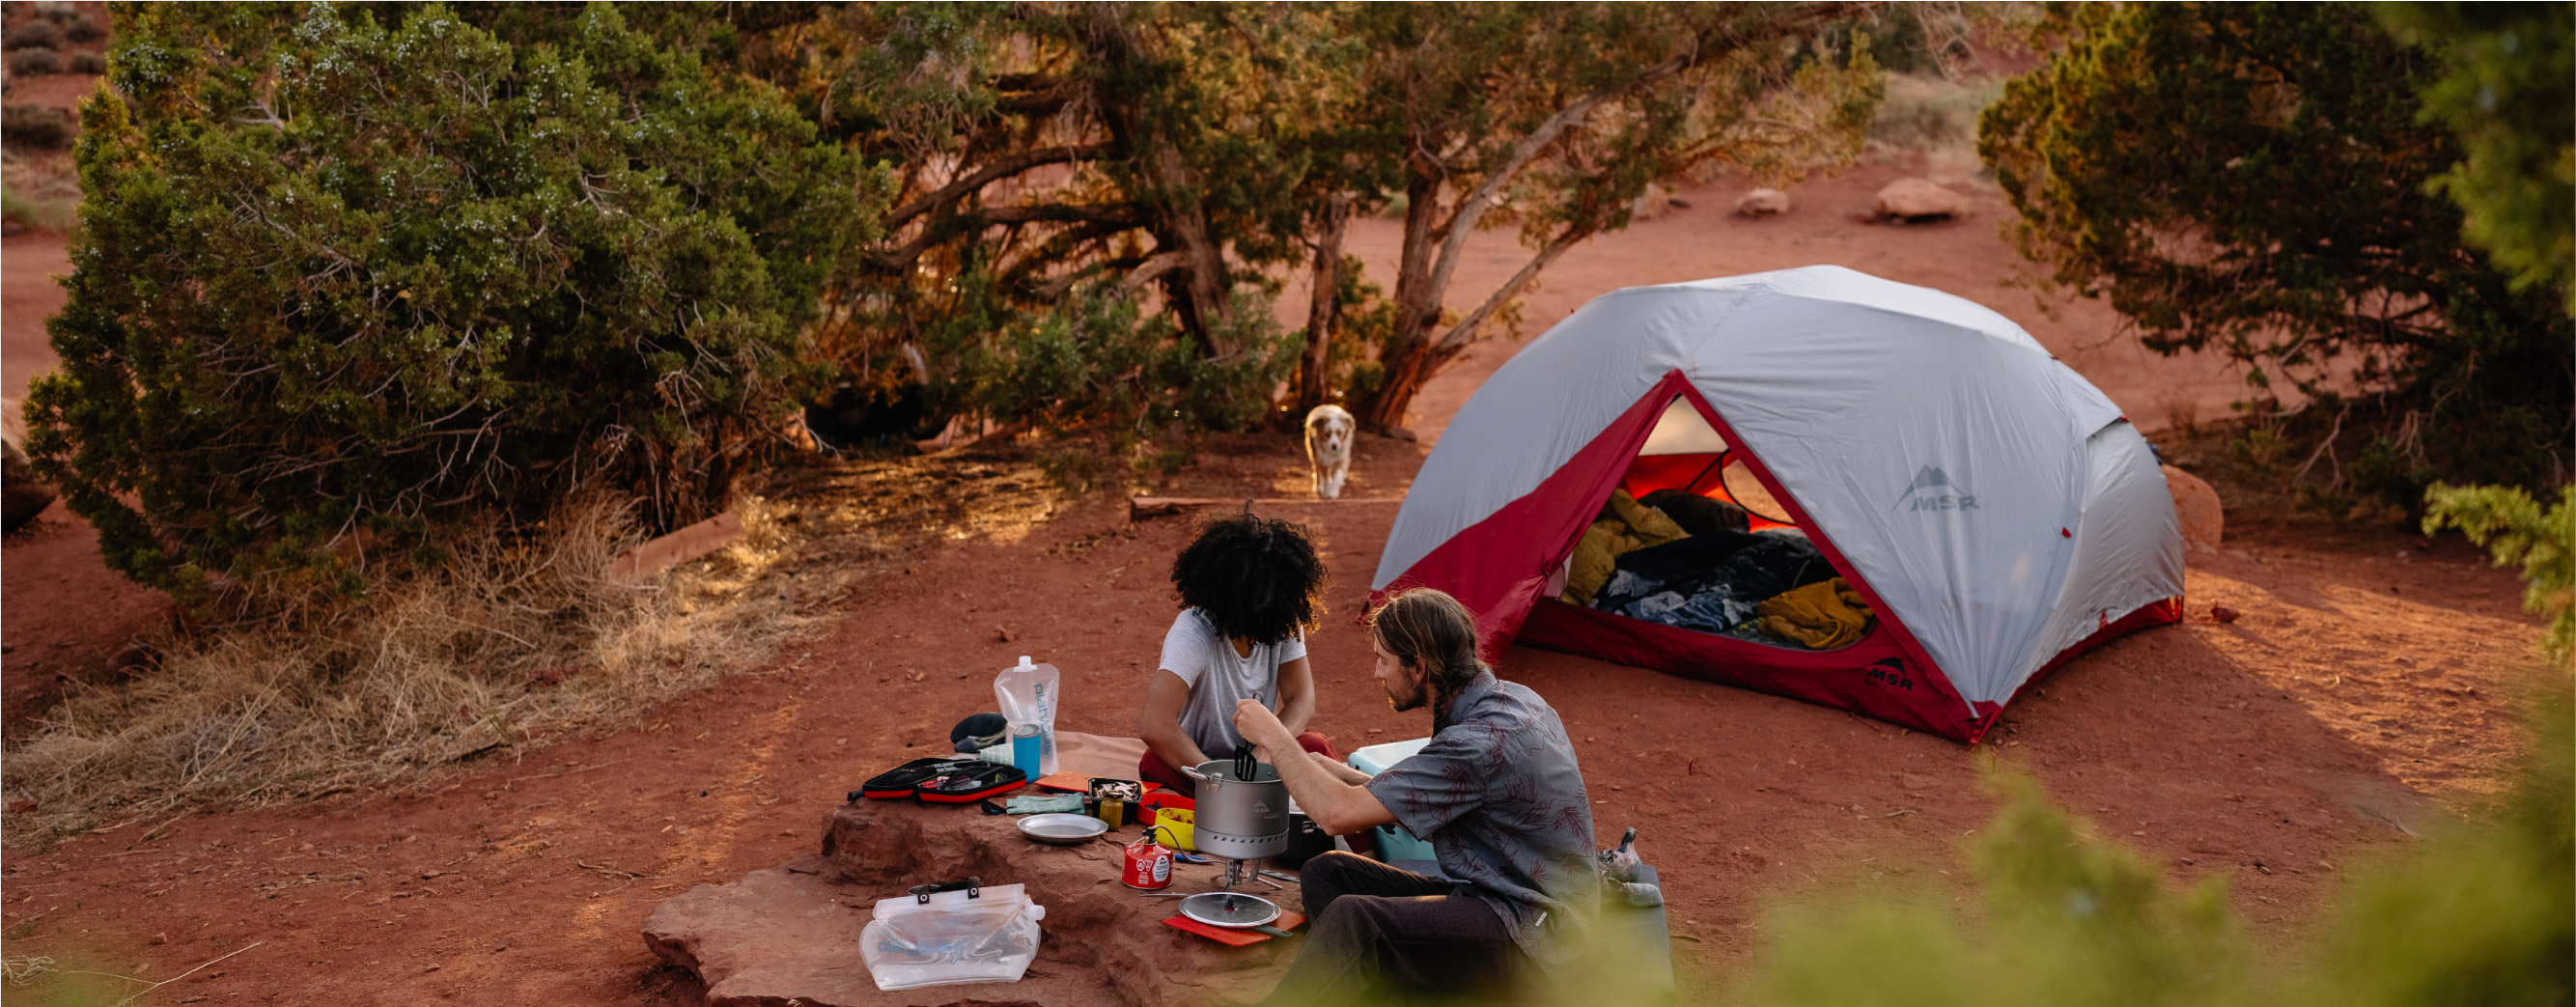 Camping-Kollektion - Camping mit Komfort